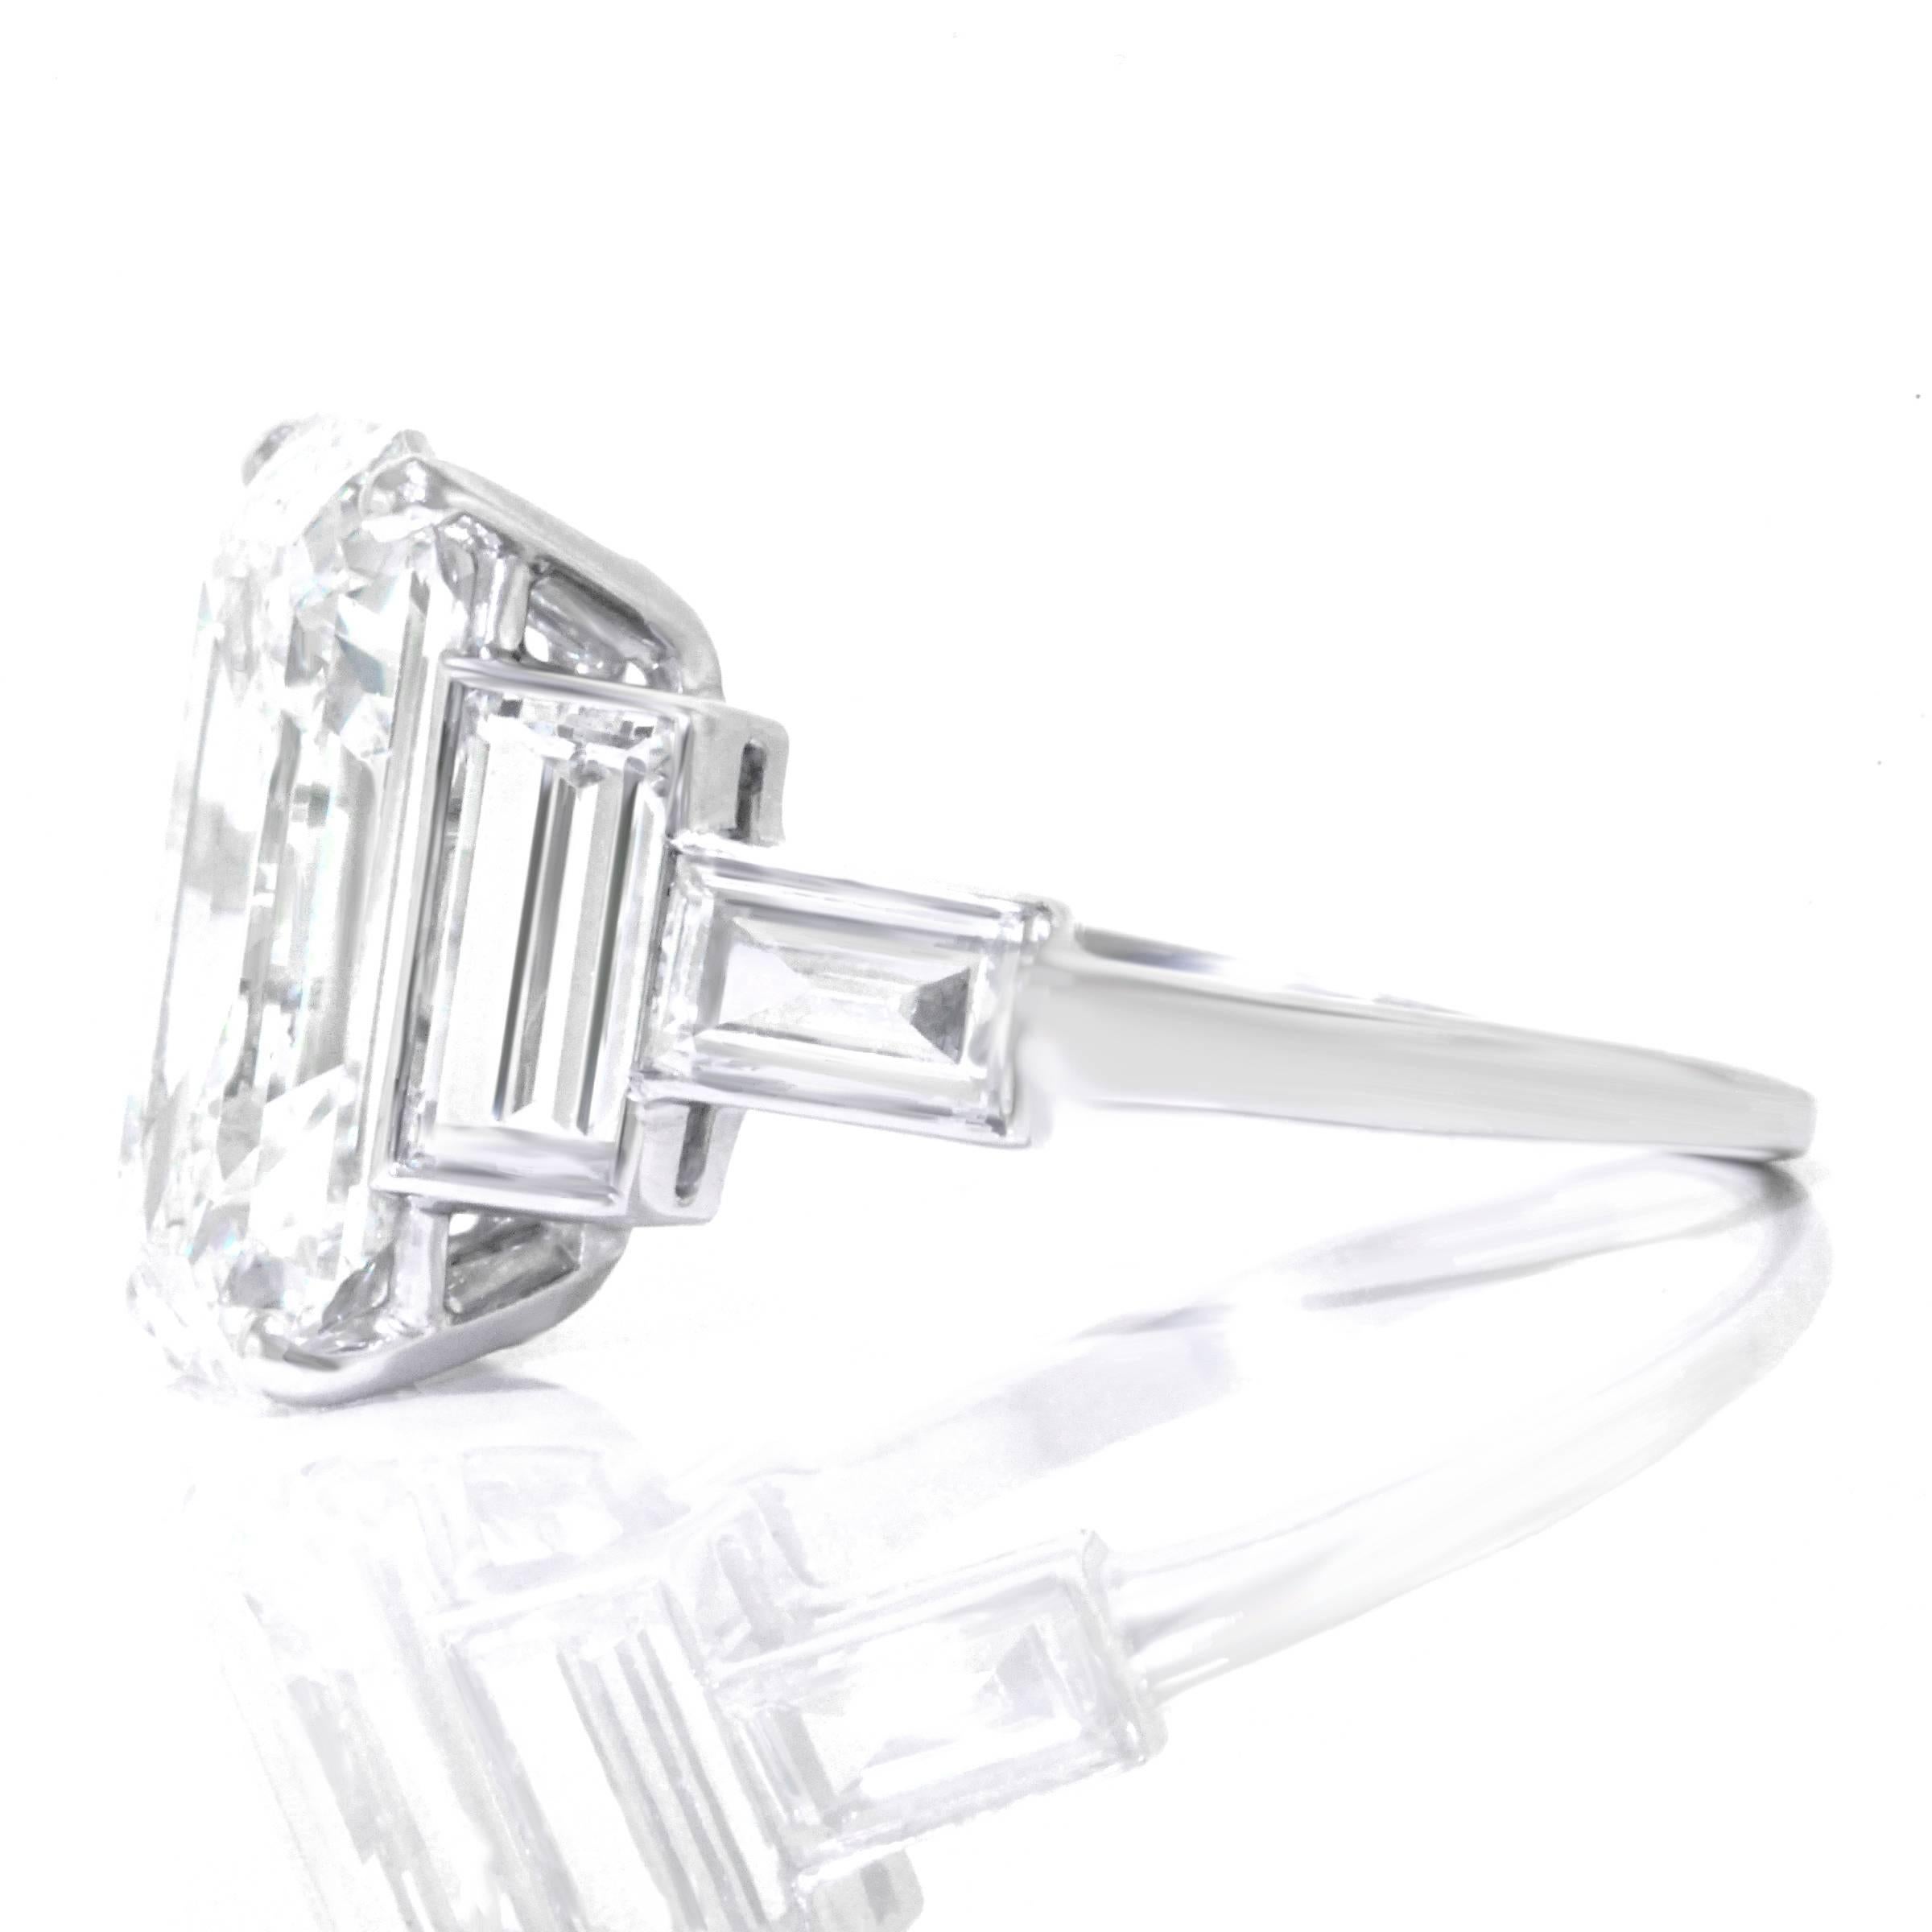 Spectacular 6.64 Carat Art Deco Diamond Ring in Platinum GIA 3